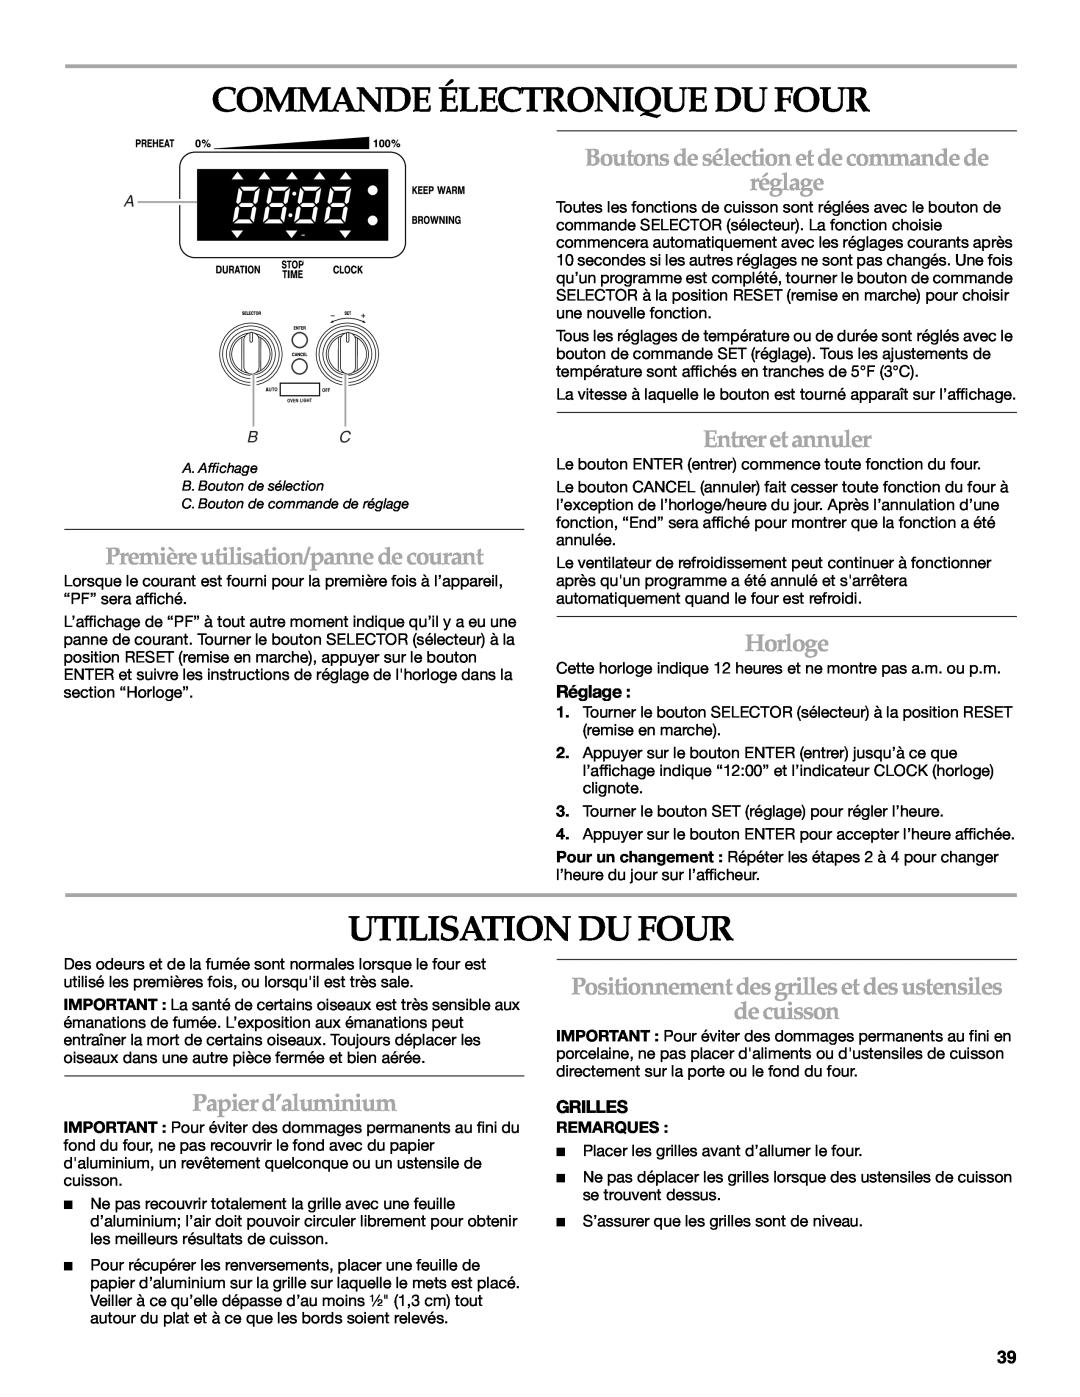 KitchenAid KDRP407 KDRP462 manual Commande Électronique Du Four, Utilisation Du Four, Première utilisation/panne de courant 